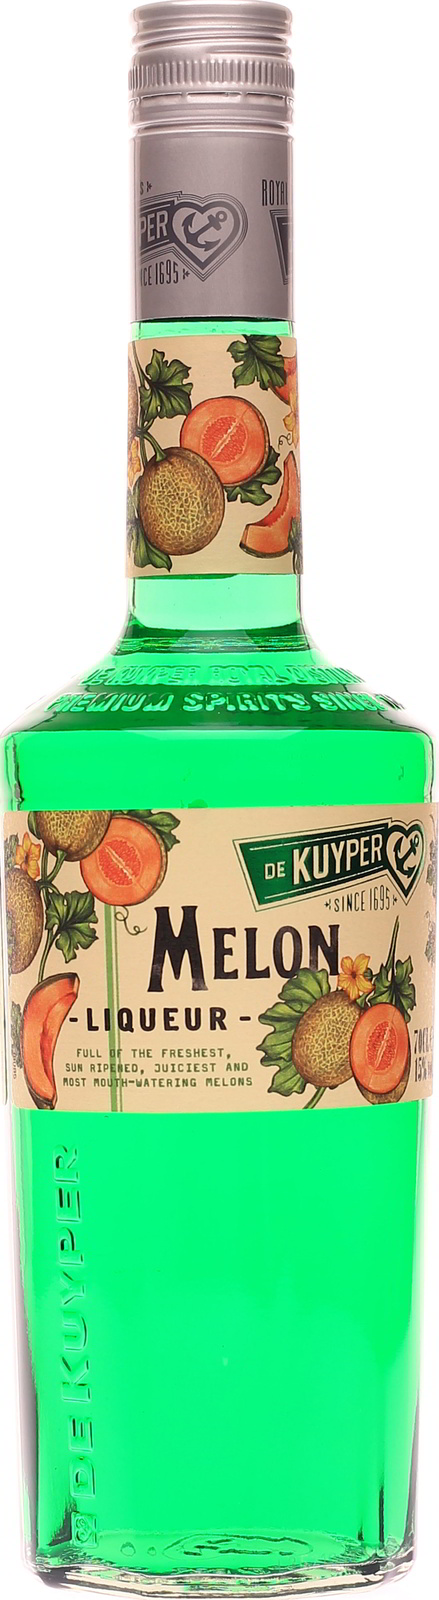 günstig Kuyper Melonenlikör im Melon, De Shop